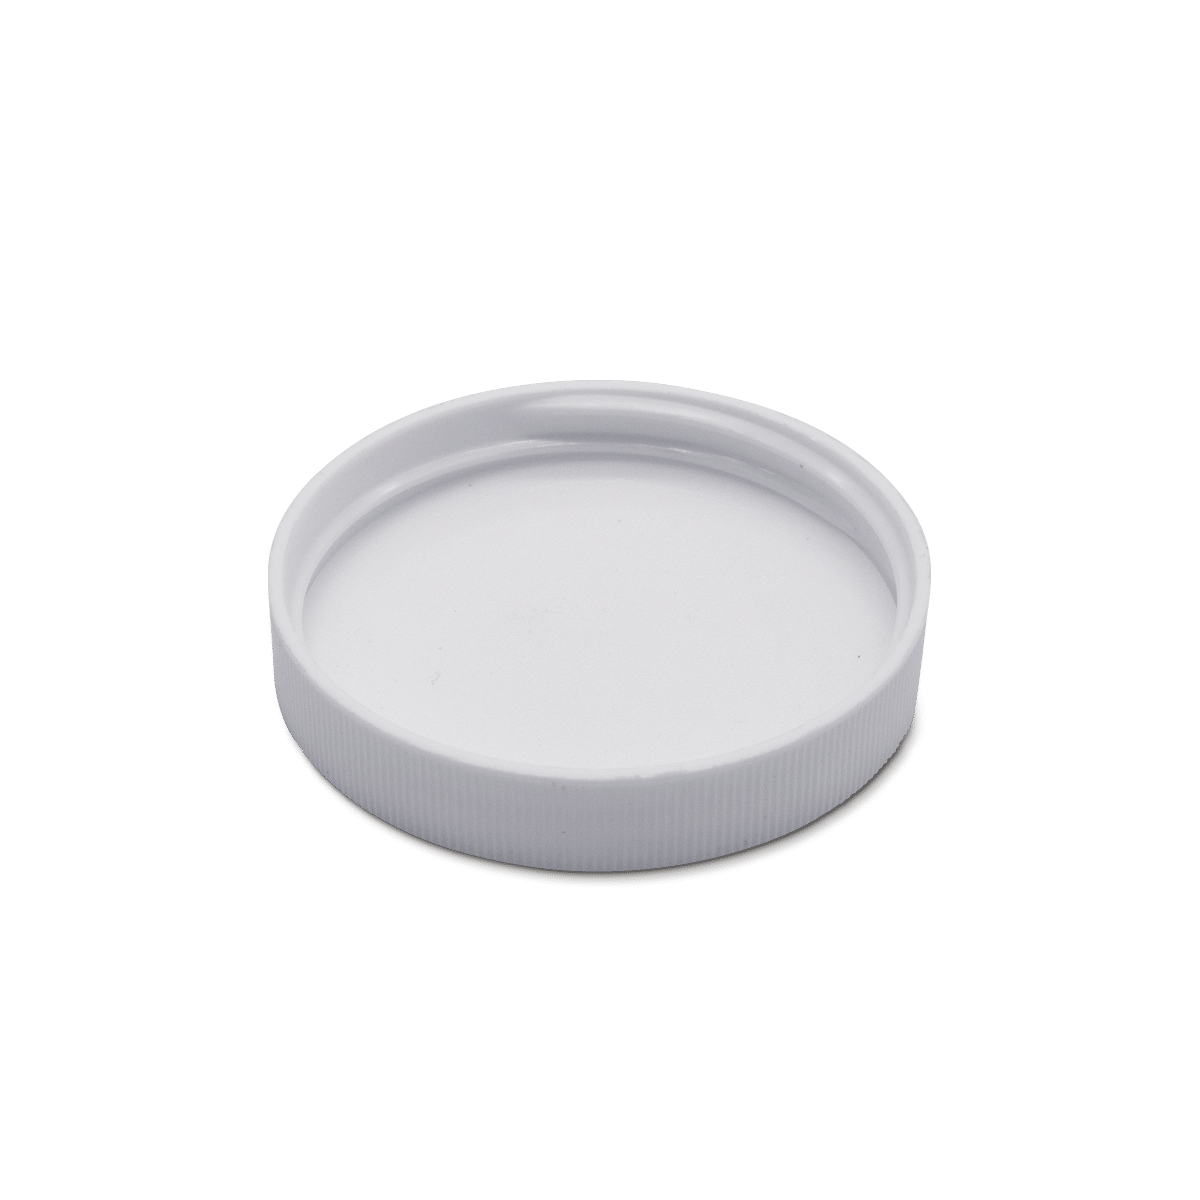 bee lid - Deckel mit Membranverschluss für Toilette